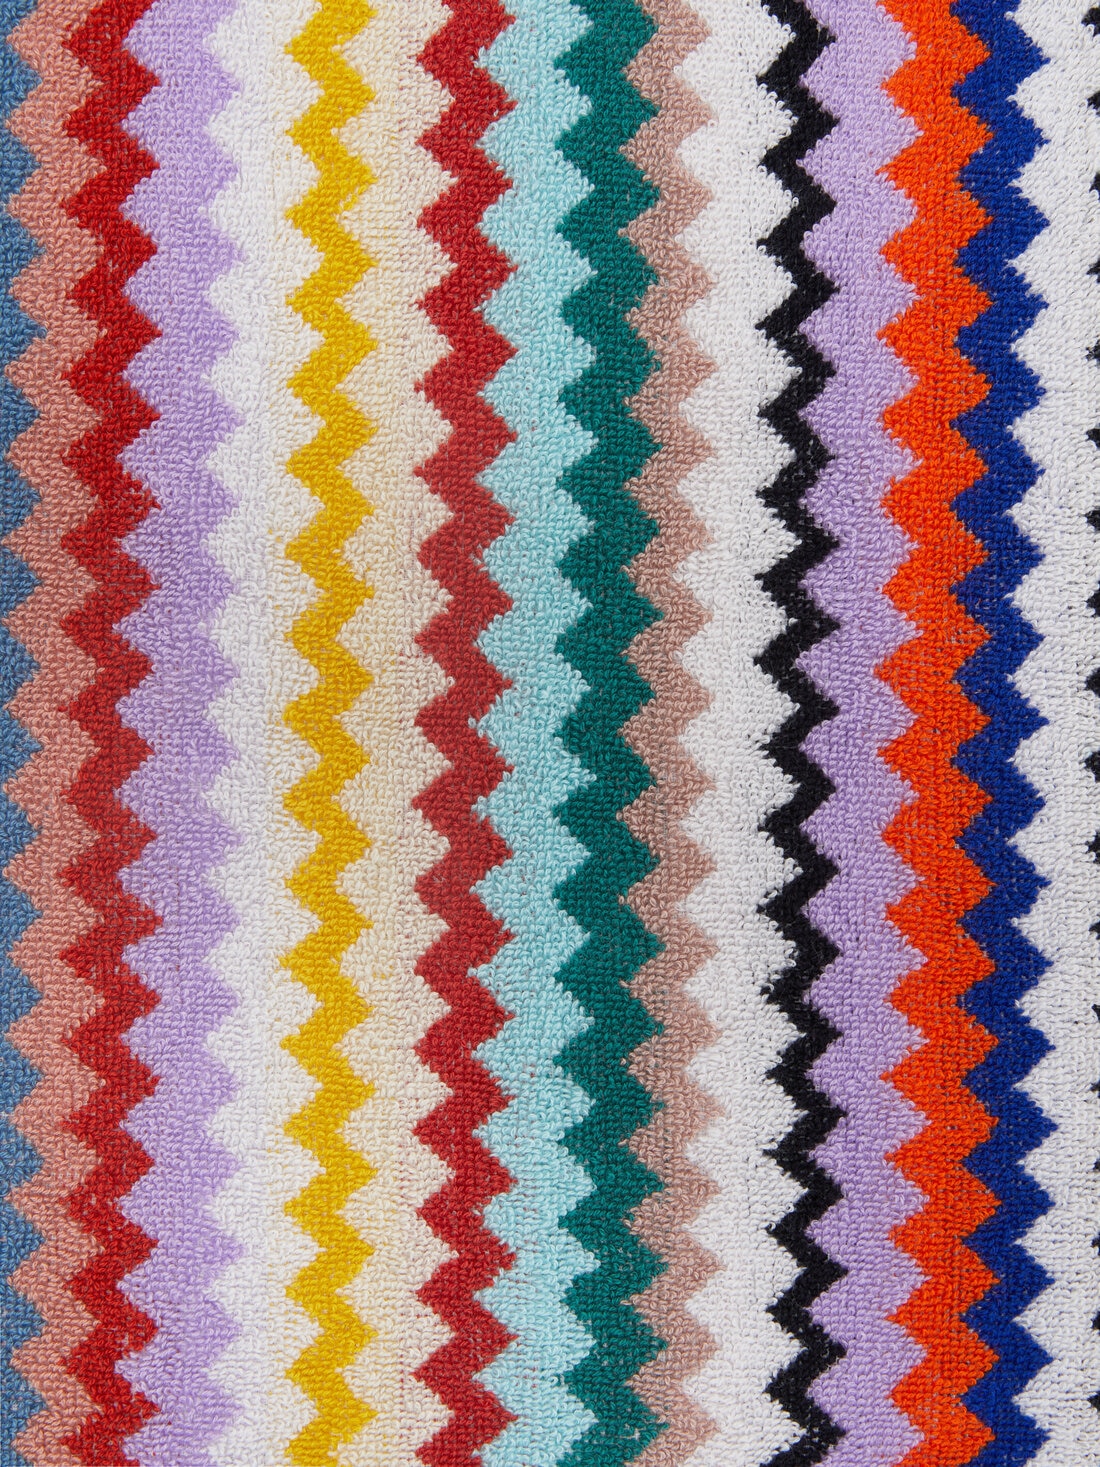 Riverbero 150x100 cm bath towel in zigzag cotton terry cloth , Multicoloured  - 8053147105307 - 3